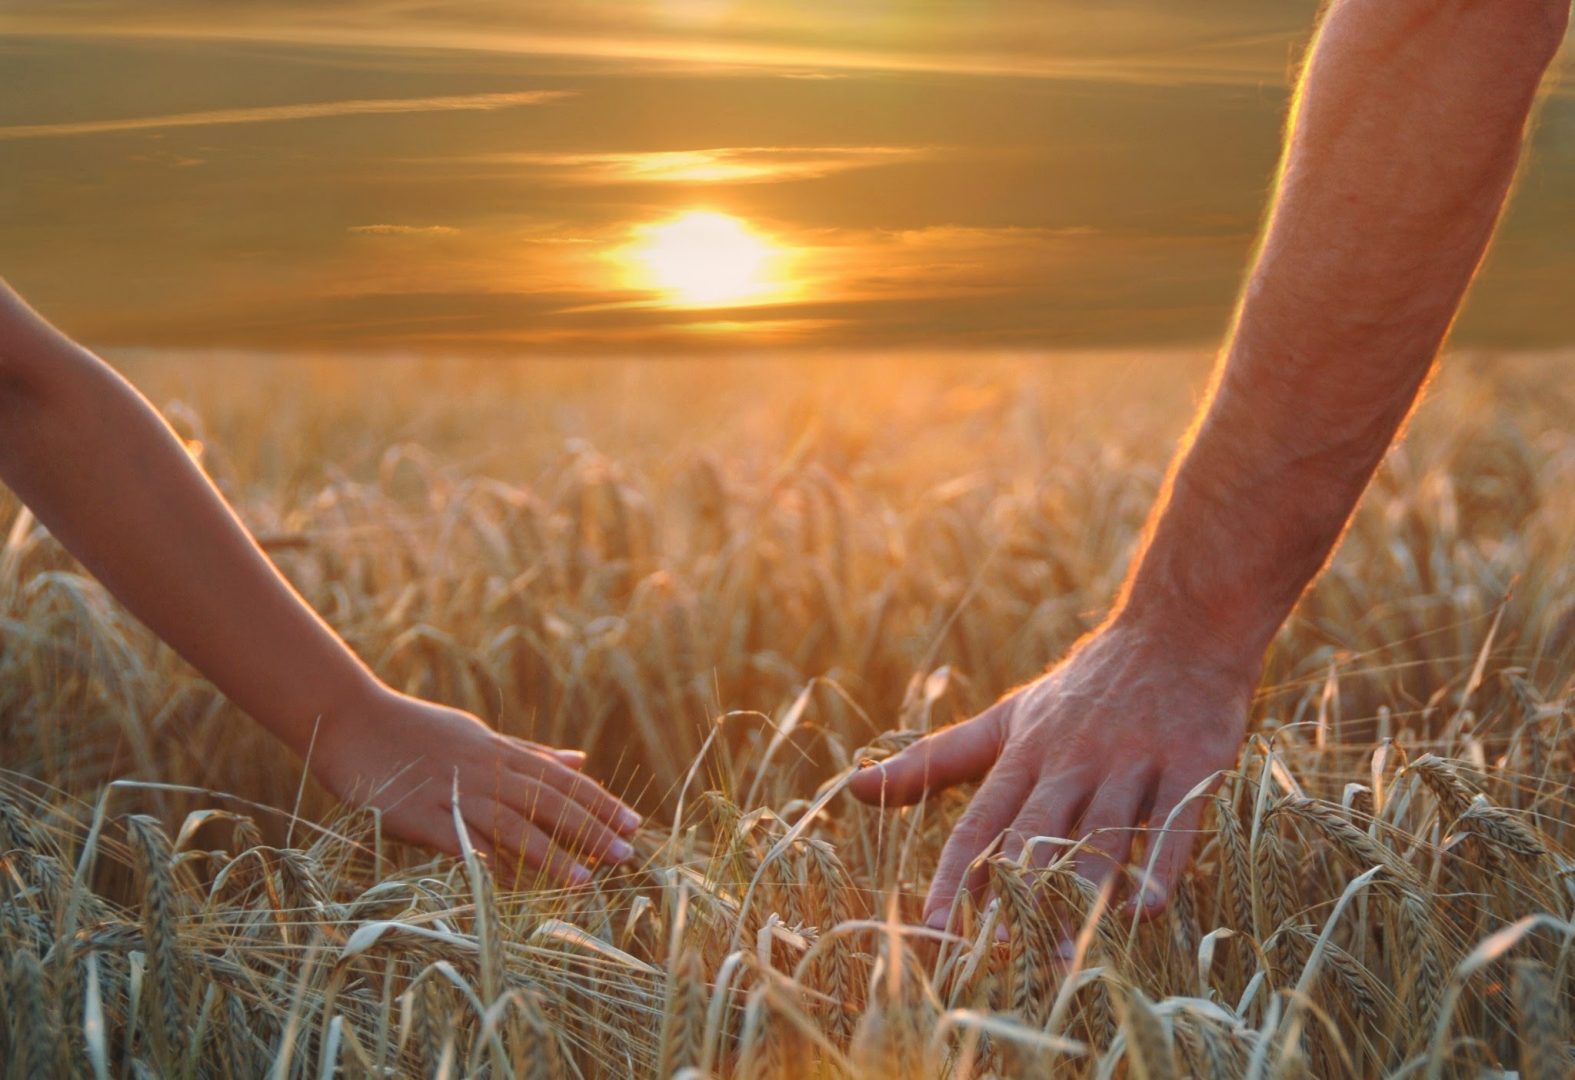 Давай именно. Берегите друг друга. Пшеничное поле человек. Берегите друг друга любите. Любите цените и берегите друг друга.